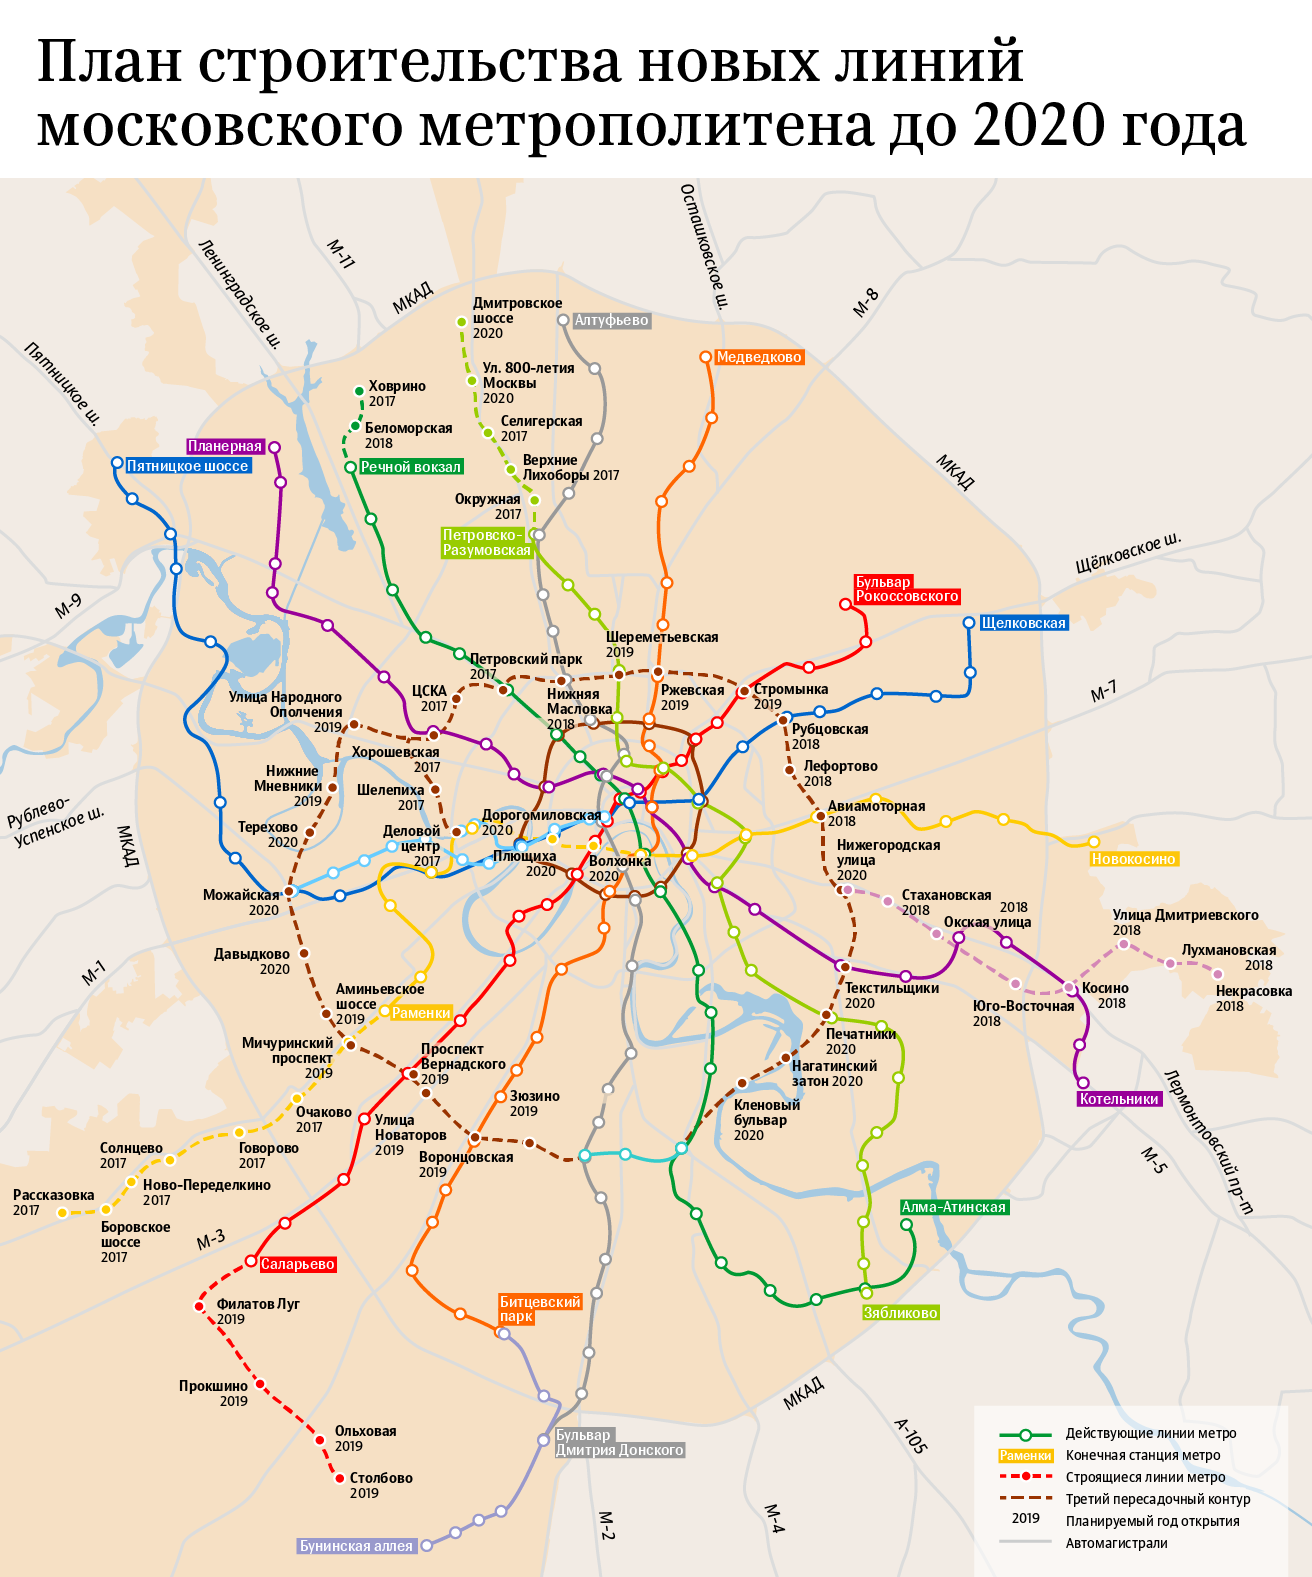 Интерактивная карта метро москвы